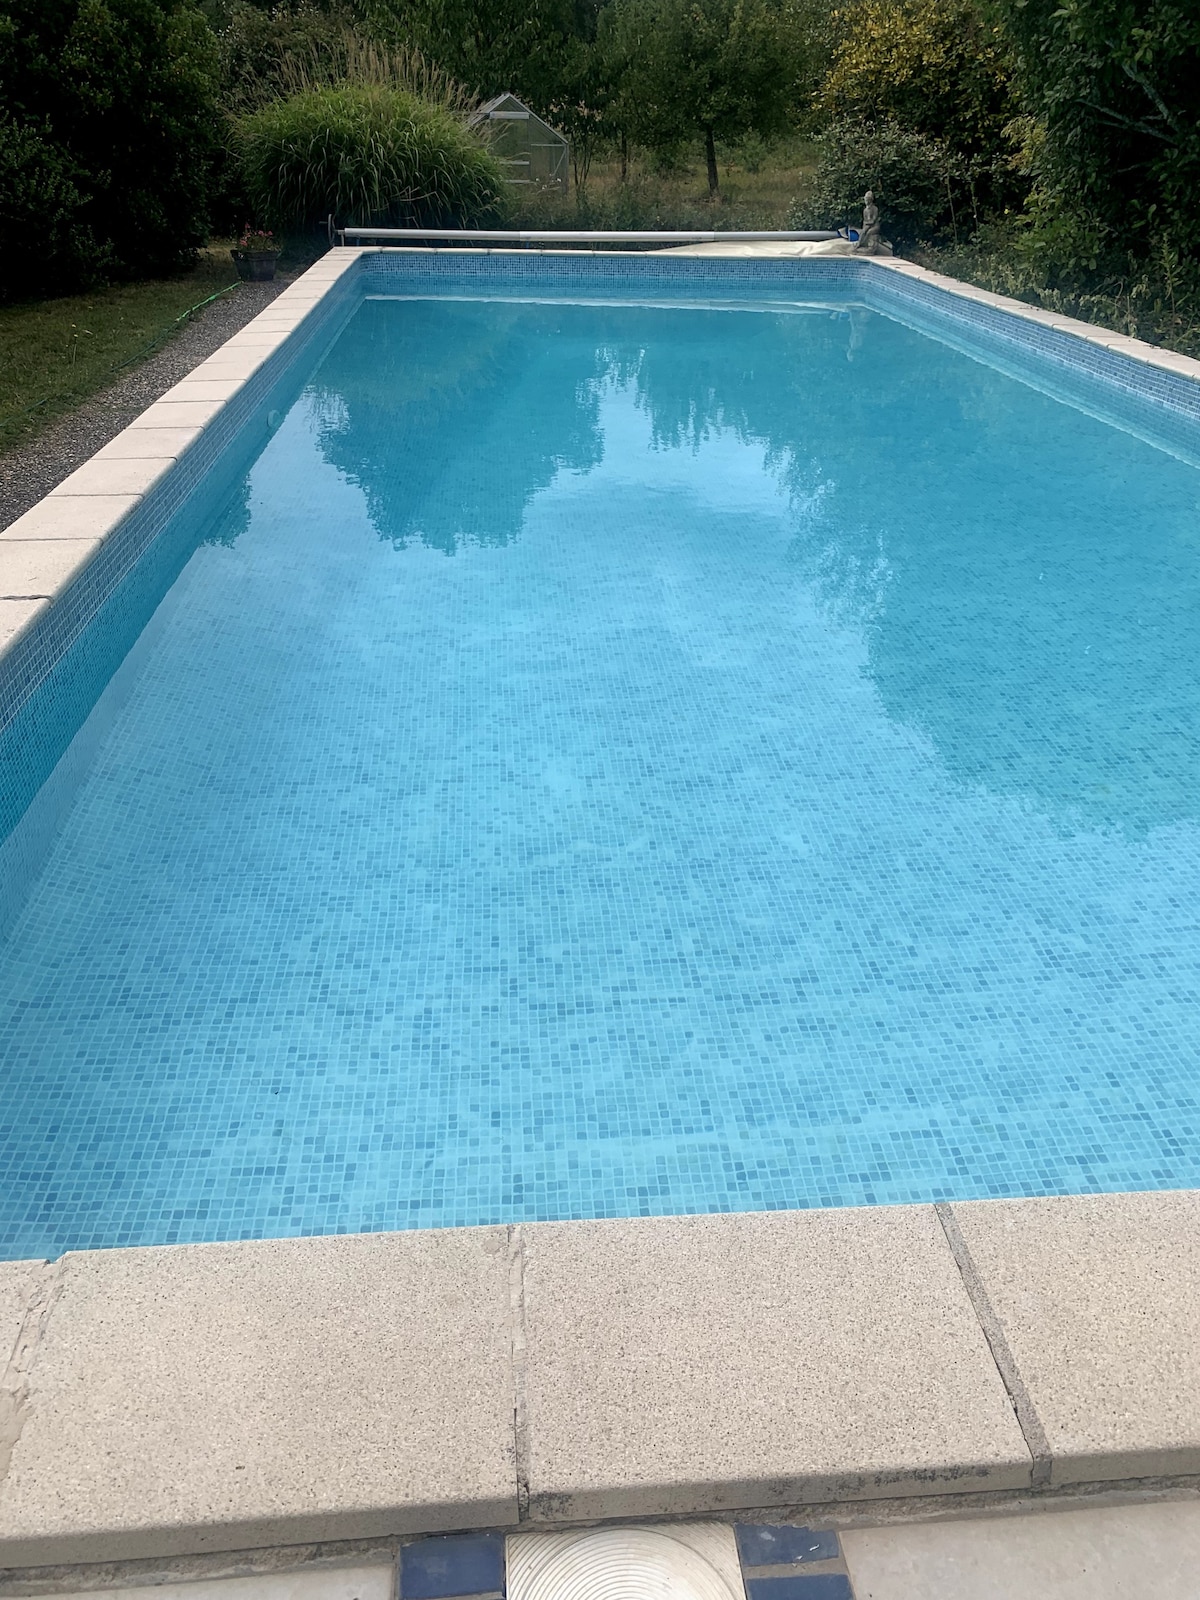 Maison dans le Périgord avec grande piscine